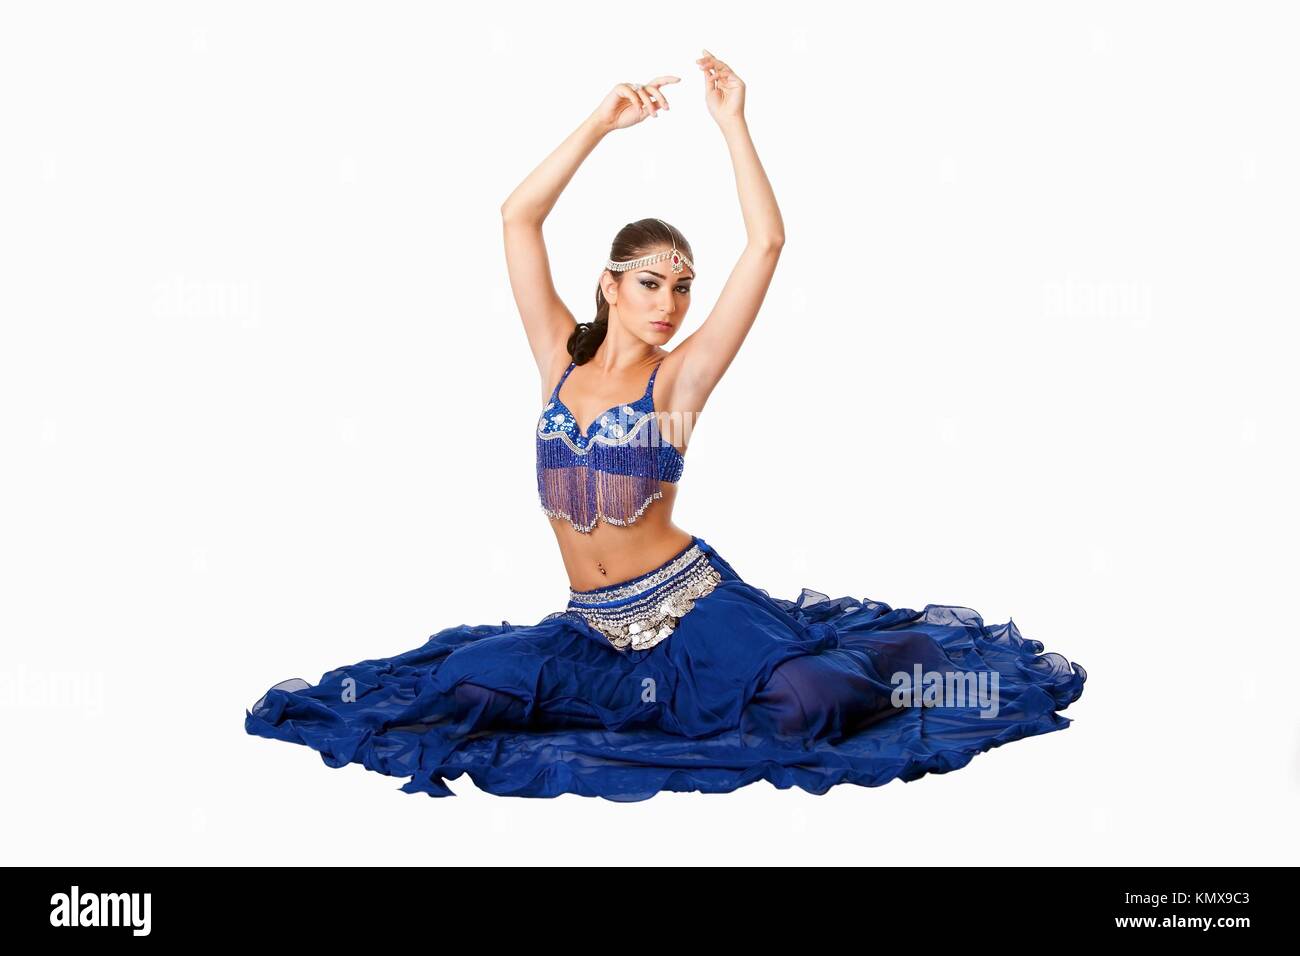 Hermosa egipcia Israelí de Oriente Medio libanés Belly Dancer ejecutante en falda azul y bra con los brazos en el aire sentado, aislado Foto de stock